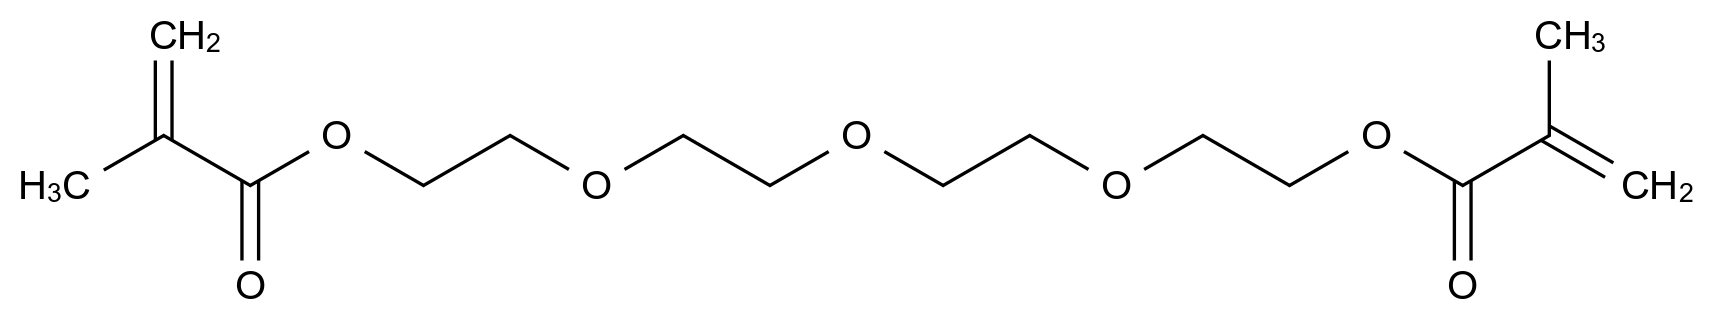 四乙二醇二甲基丙烯酸酯_109-17-1